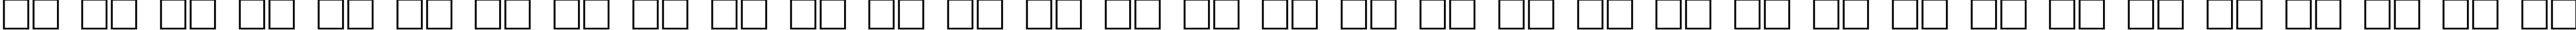 Пример написания русского алфавита шрифтом Walt Disney Script